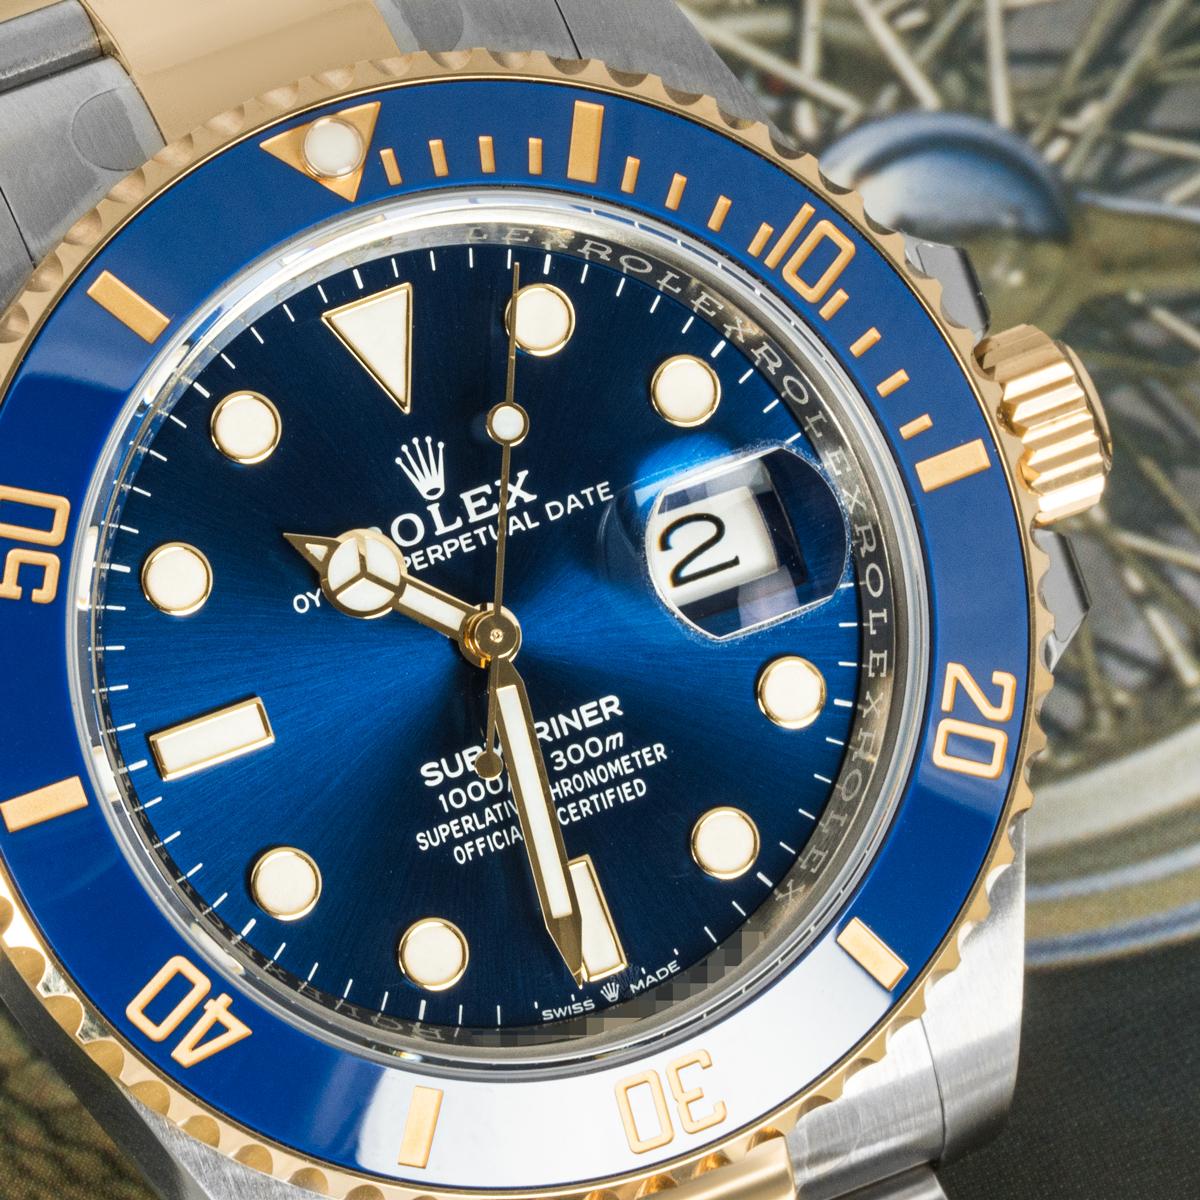 Une Submariner Date de 41 mm, en Oystersteel et or jaune de Rolex. Dotée d'un cadran bleu, cette 126613LB présente également une lunette tournante unidirectionnelle en or jaune avec un insert en céramique bleue.

Le bracelet Oyster est doté d'une